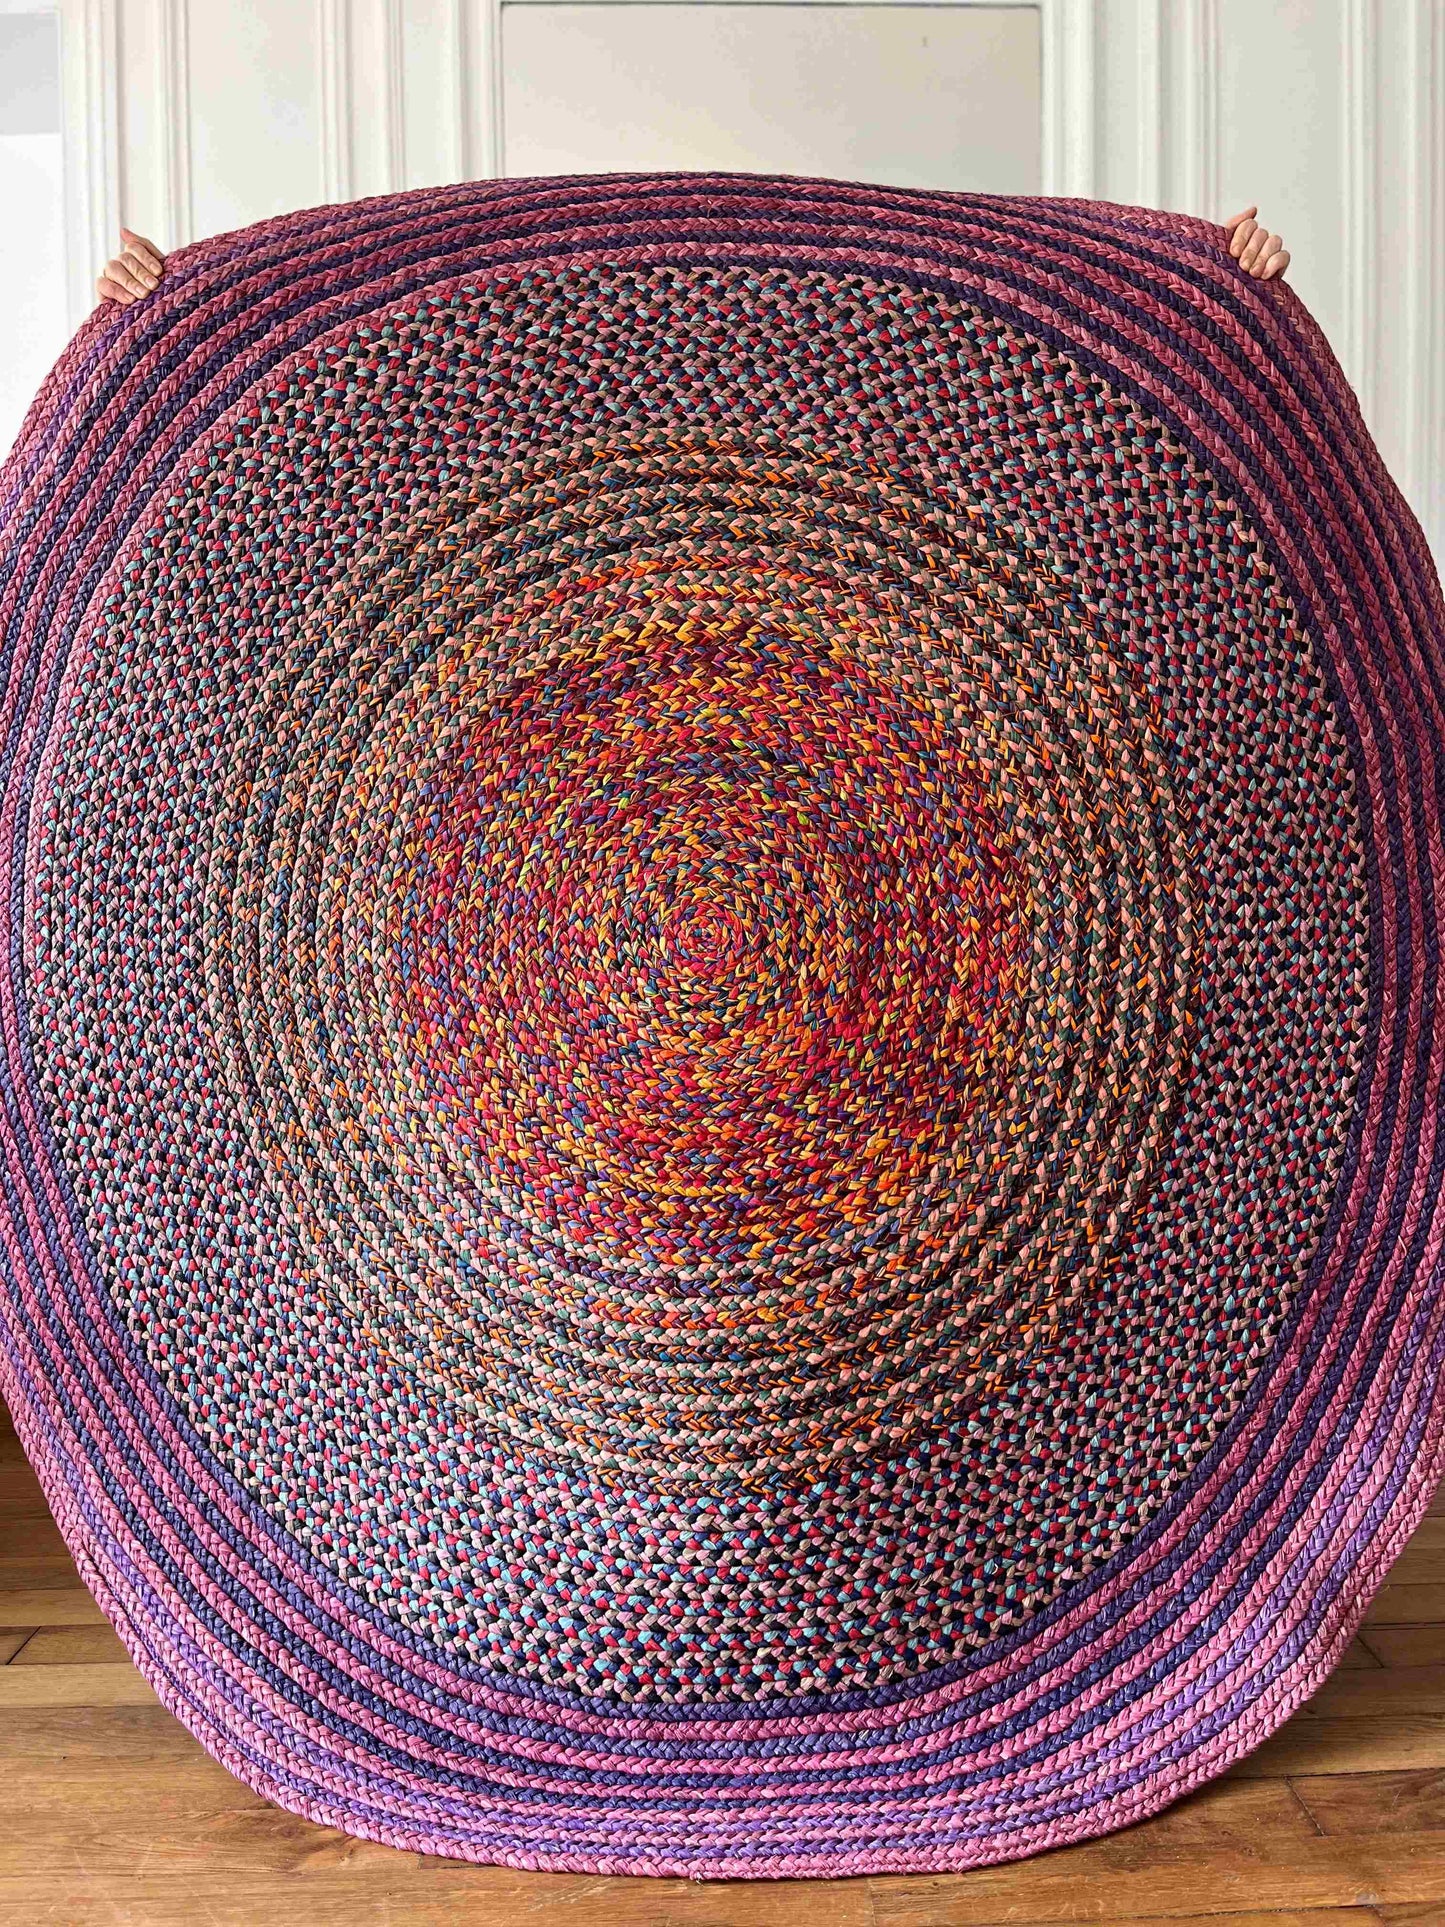 Tapis rond en raphia violet, rose, bleu et orange - Séraphine- 190 cm Intimani Ethnique chic